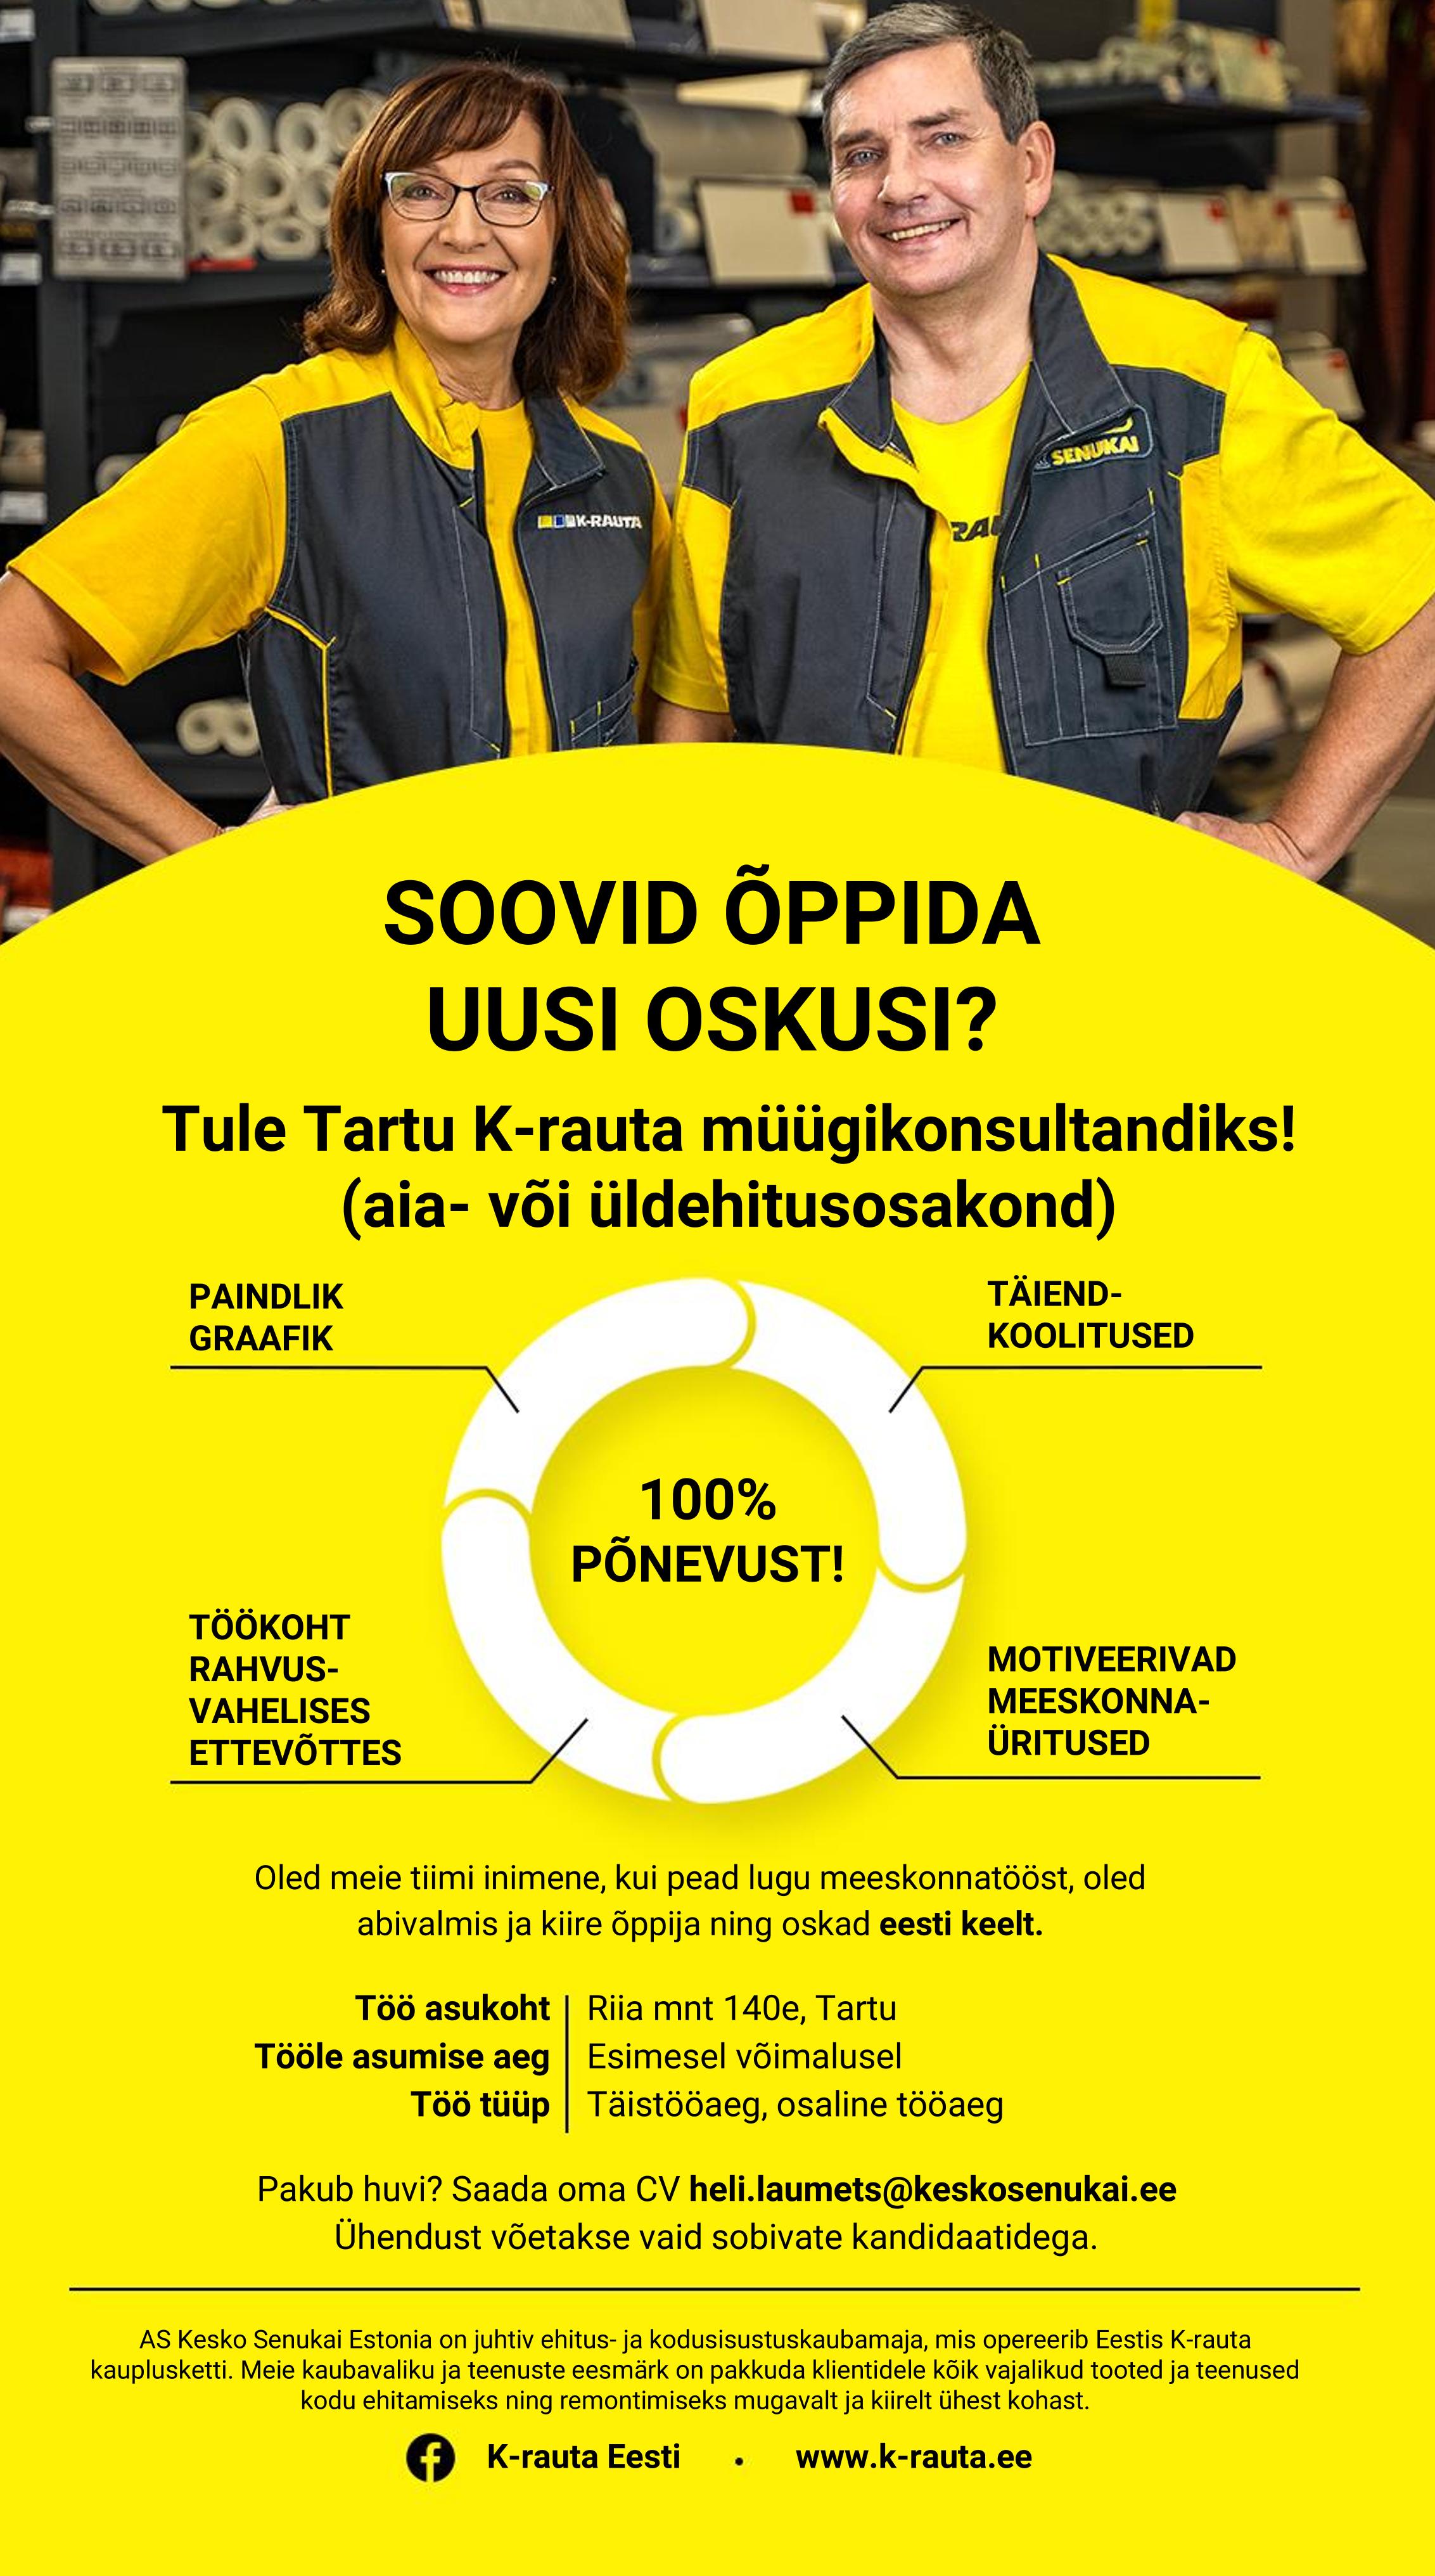 Kesko Senukai Estonia AS Müügikonsultant Tartu K-rauta (aia- või üldehitusosakond)sosakond)